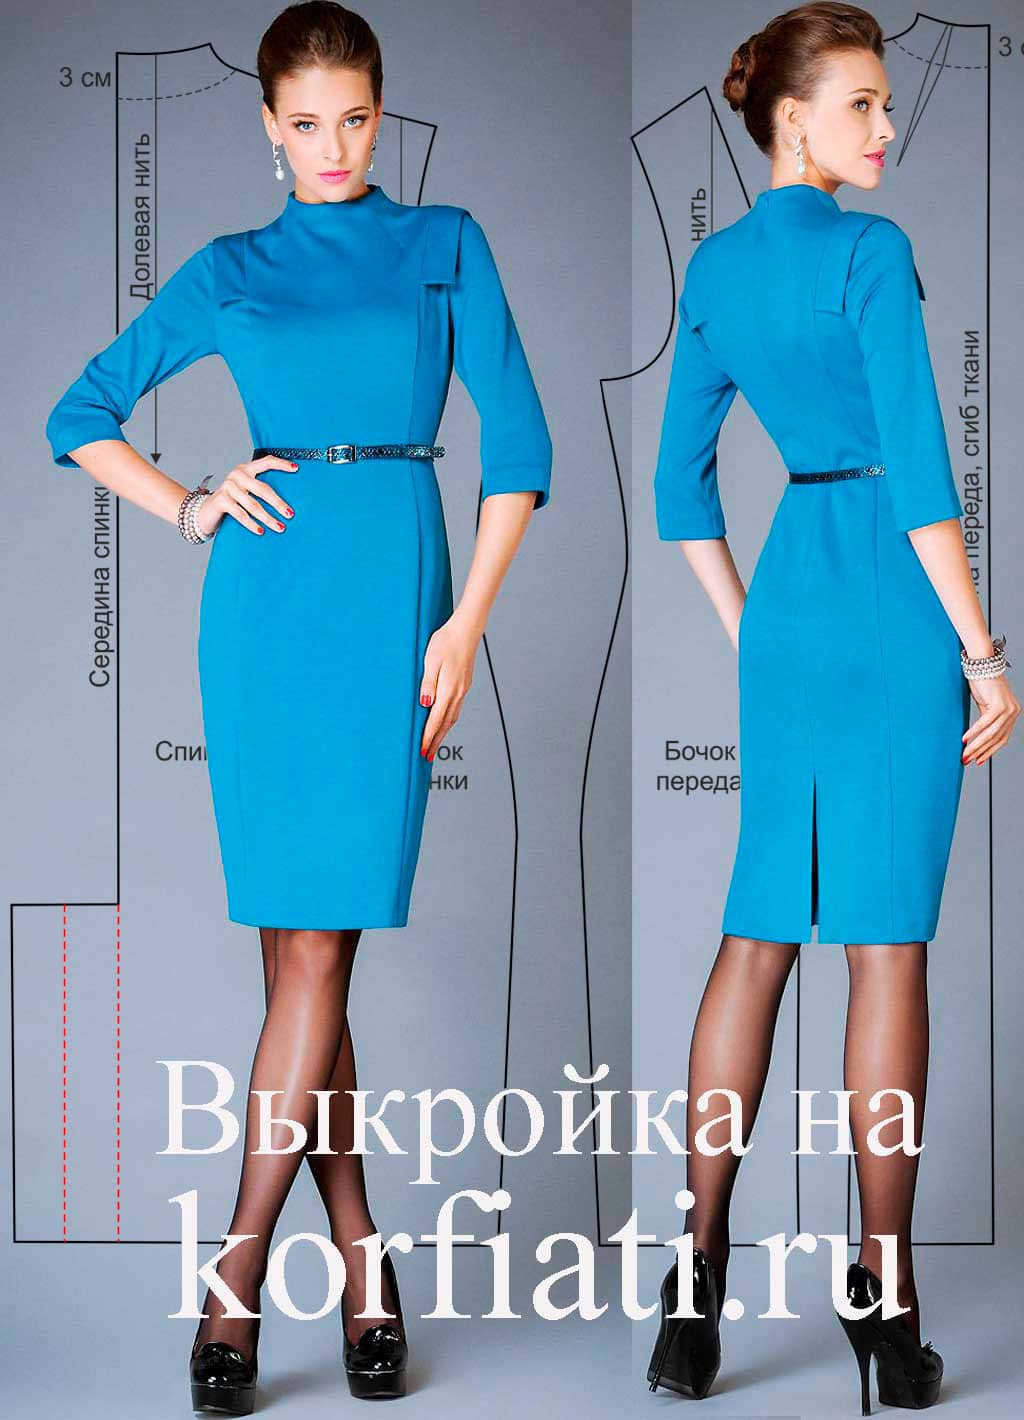 Выкройки красивых платьев для полных женщин (Шитье и крой) | Журна�л Вдохновение Рукодельницы